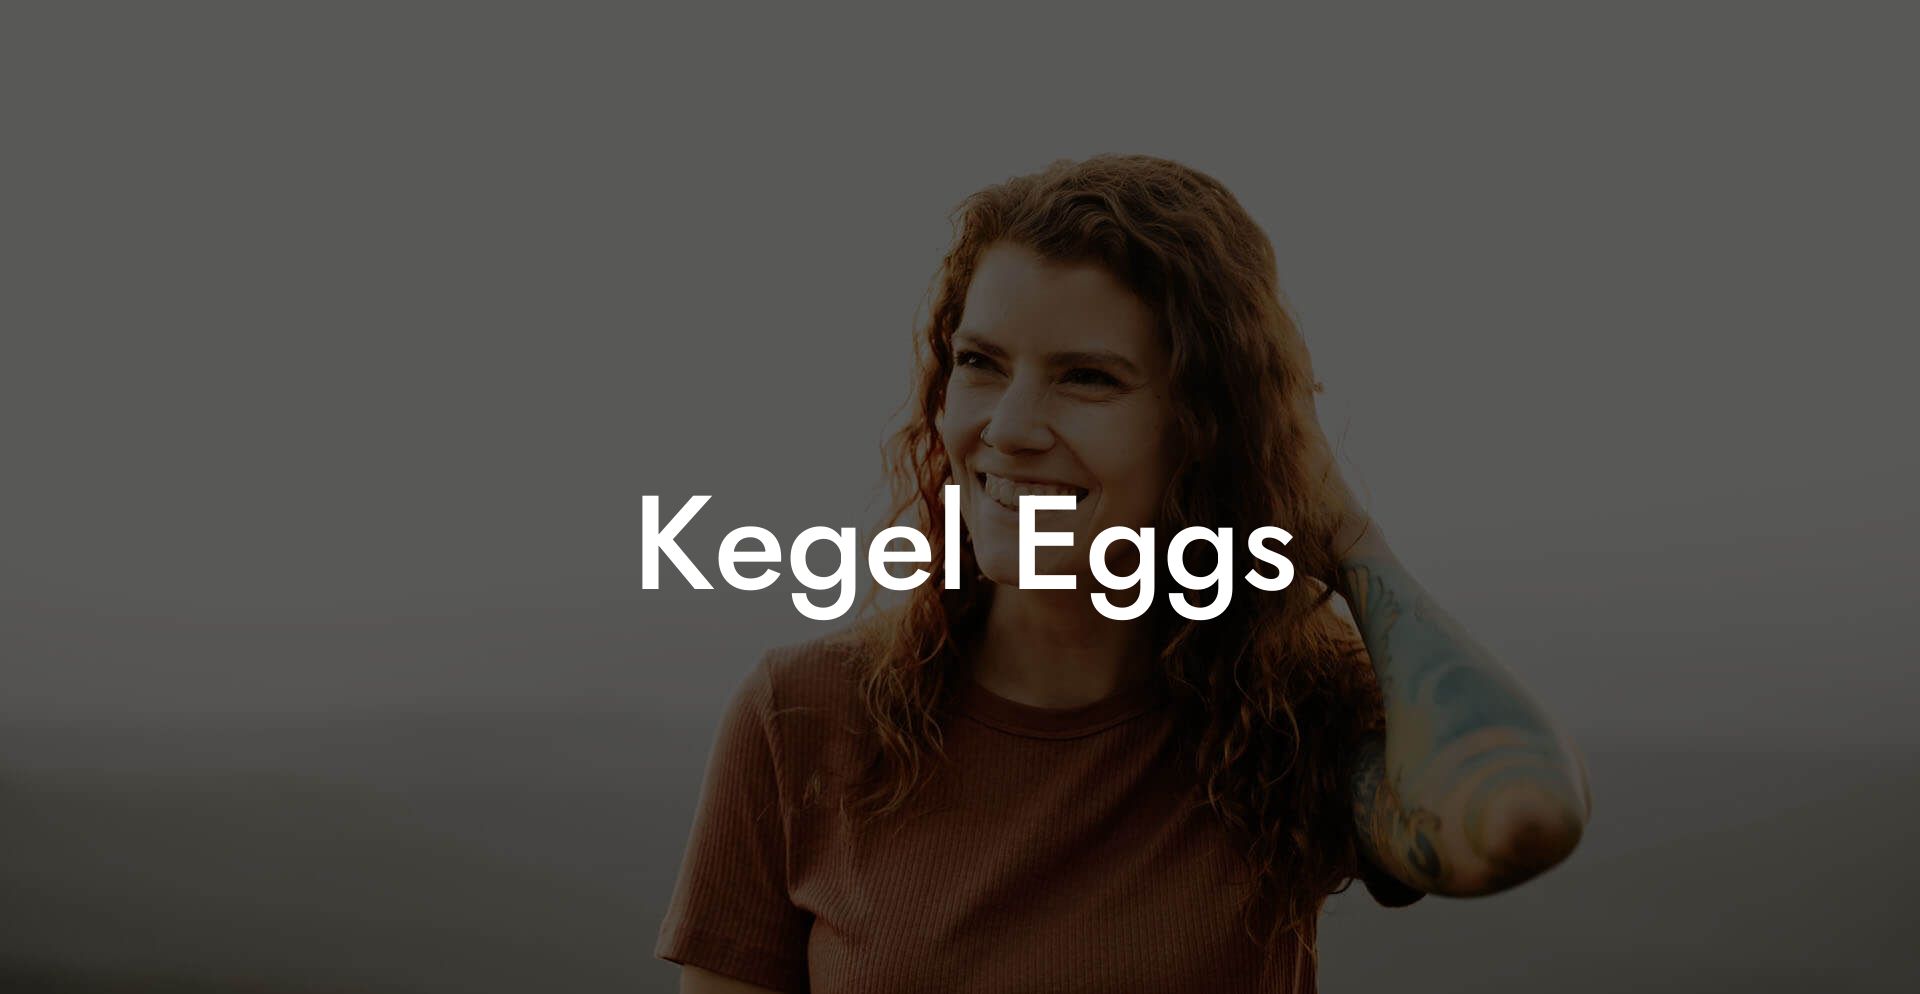 Kegel Eggs